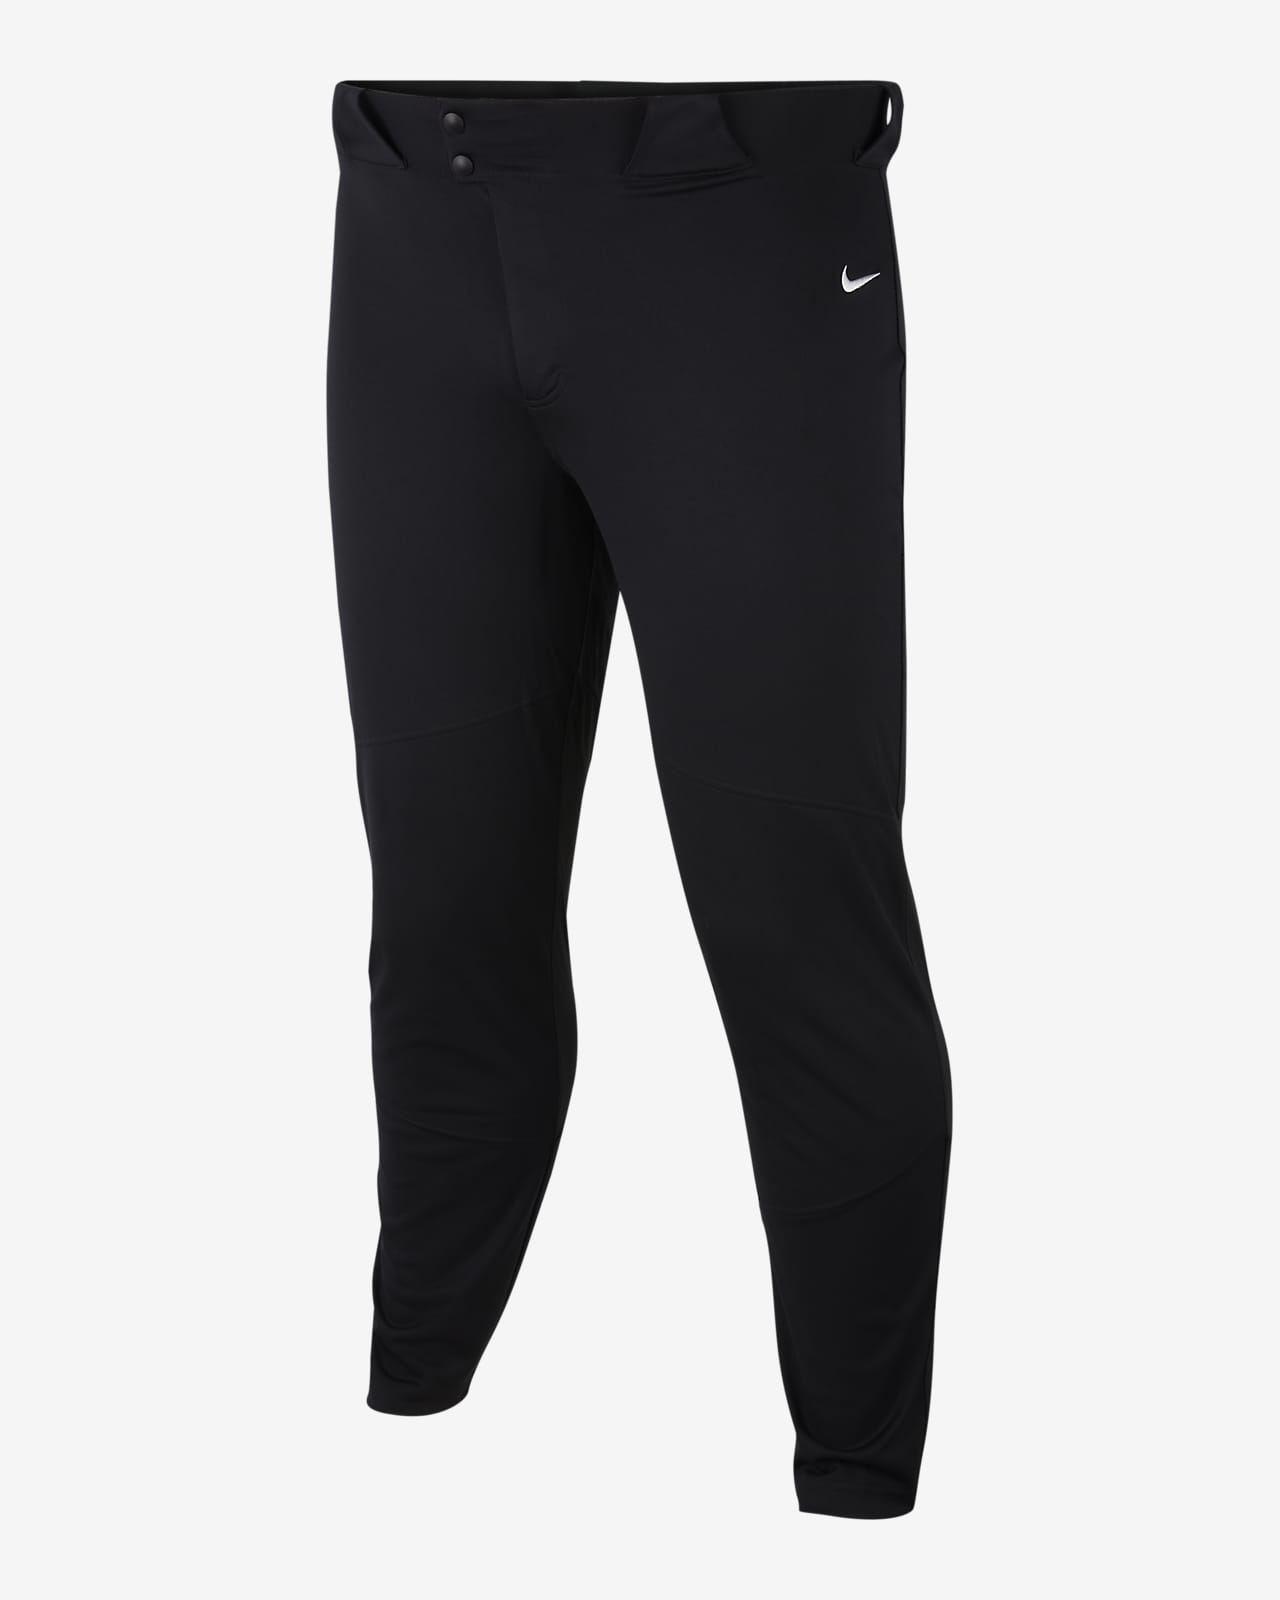 Nike Vapor Select Men's Baseball Pants 